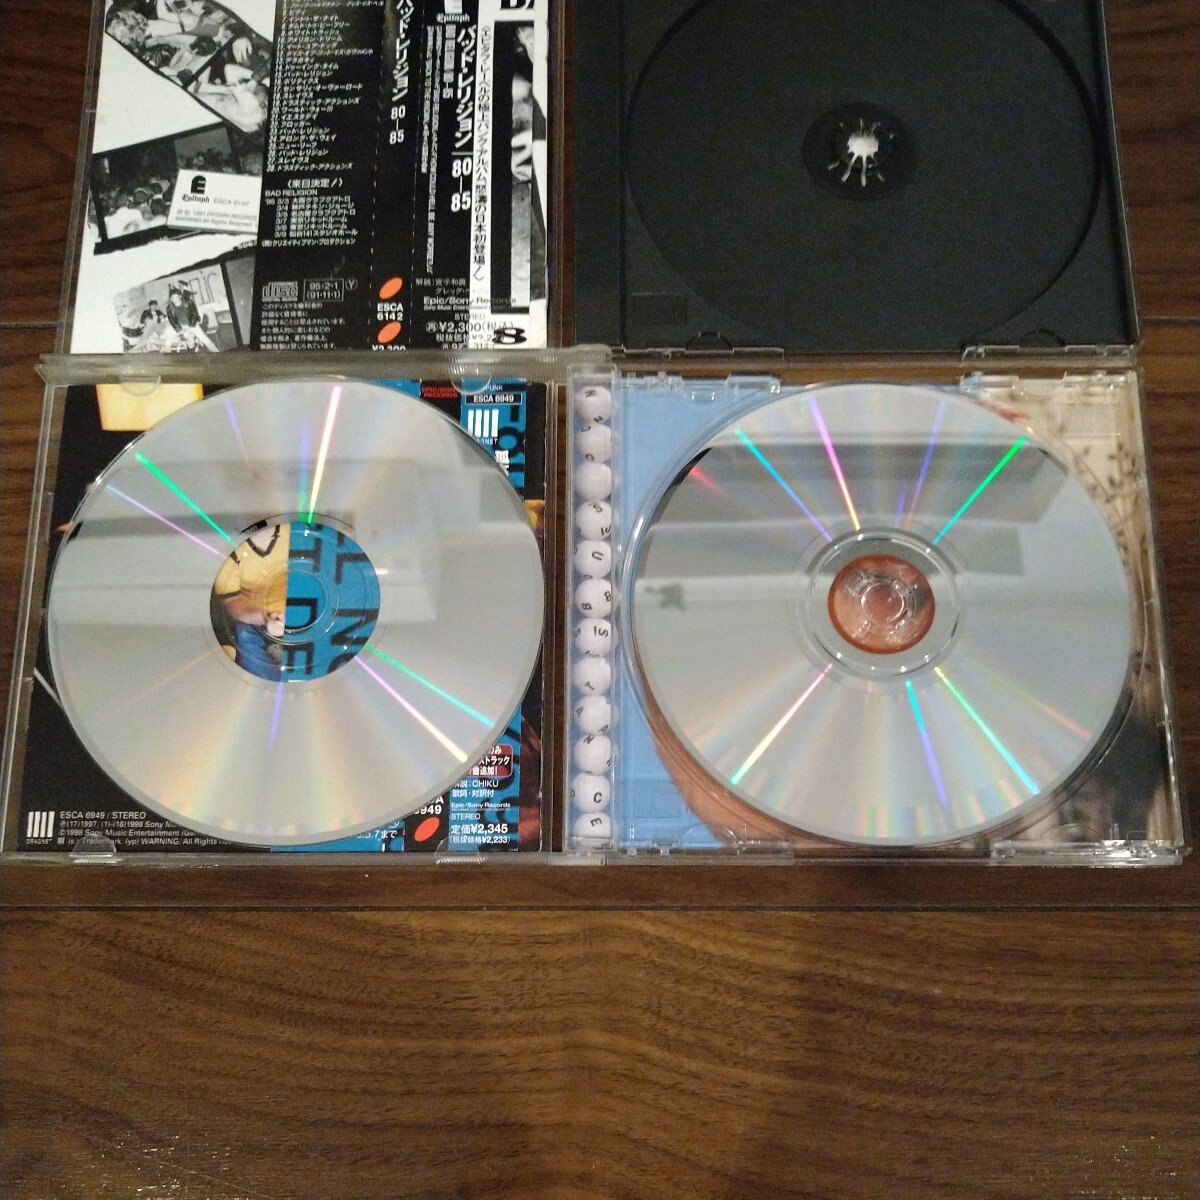 【送料無料】BAD RELIGION CDアルバム 2タイトルセット 80-85 NO SUBSTANCE バッドレリジョン パンクロック_画像4